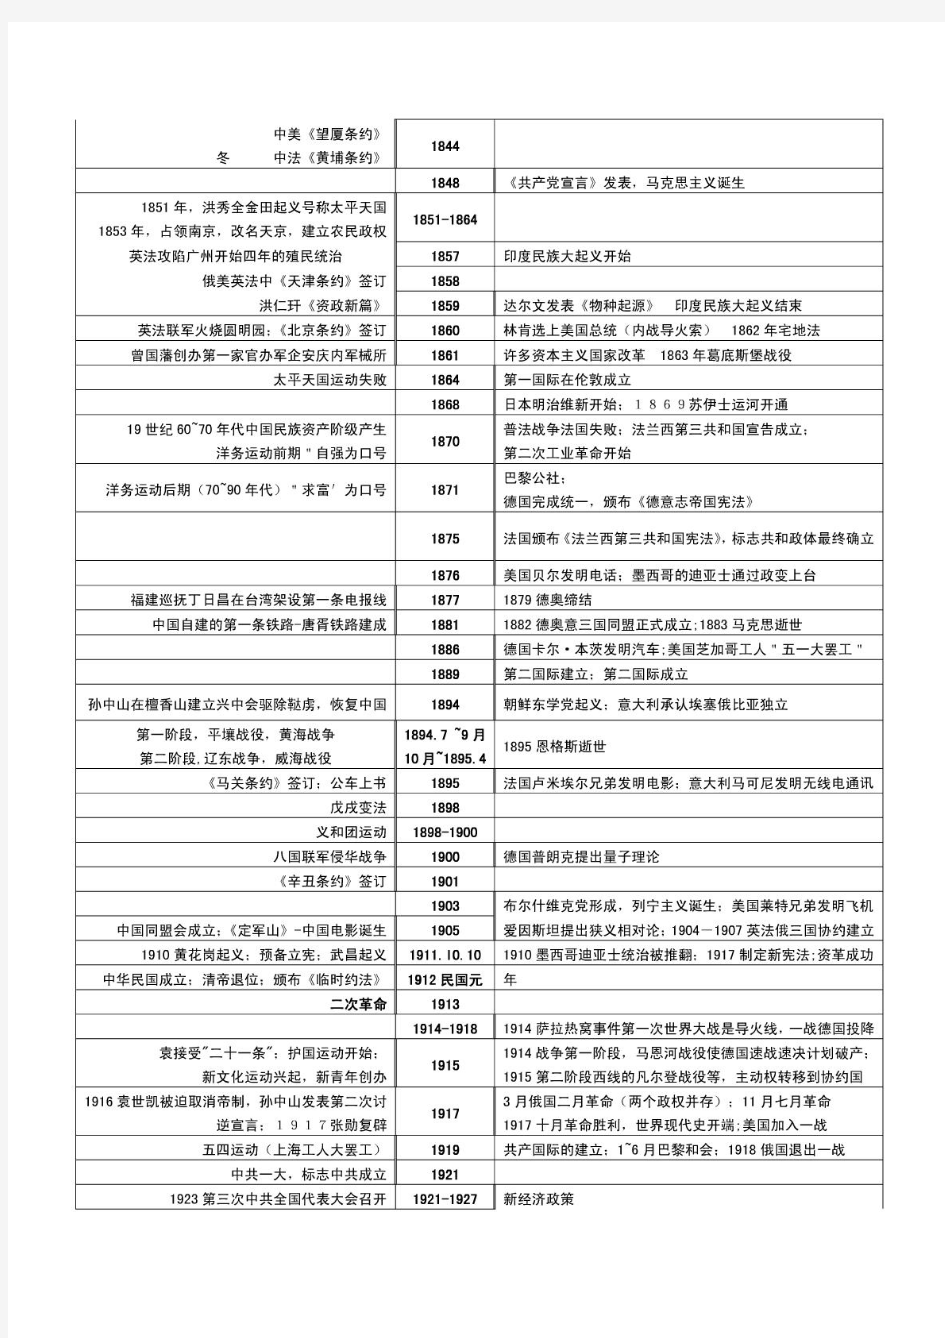 高中历史中国史世界史对照大事年表